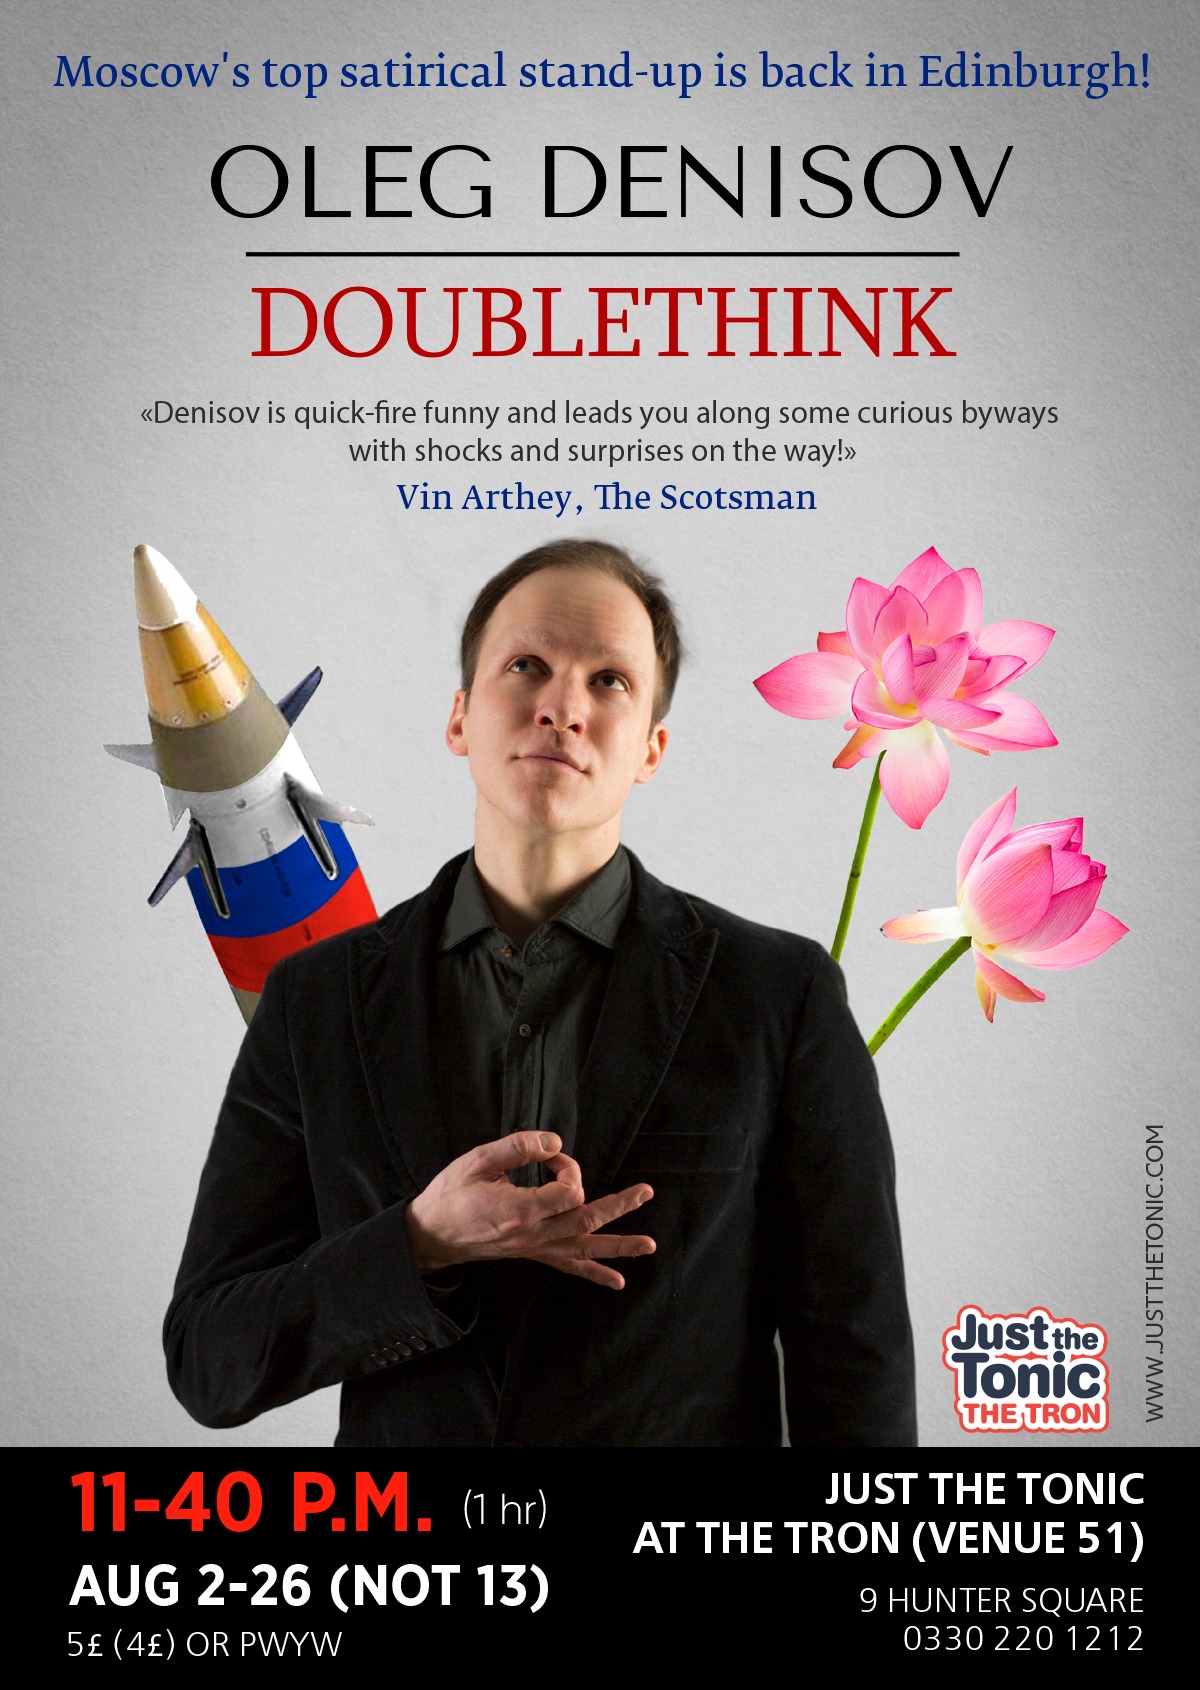 The poster for Oleg Denisov: Doublethink